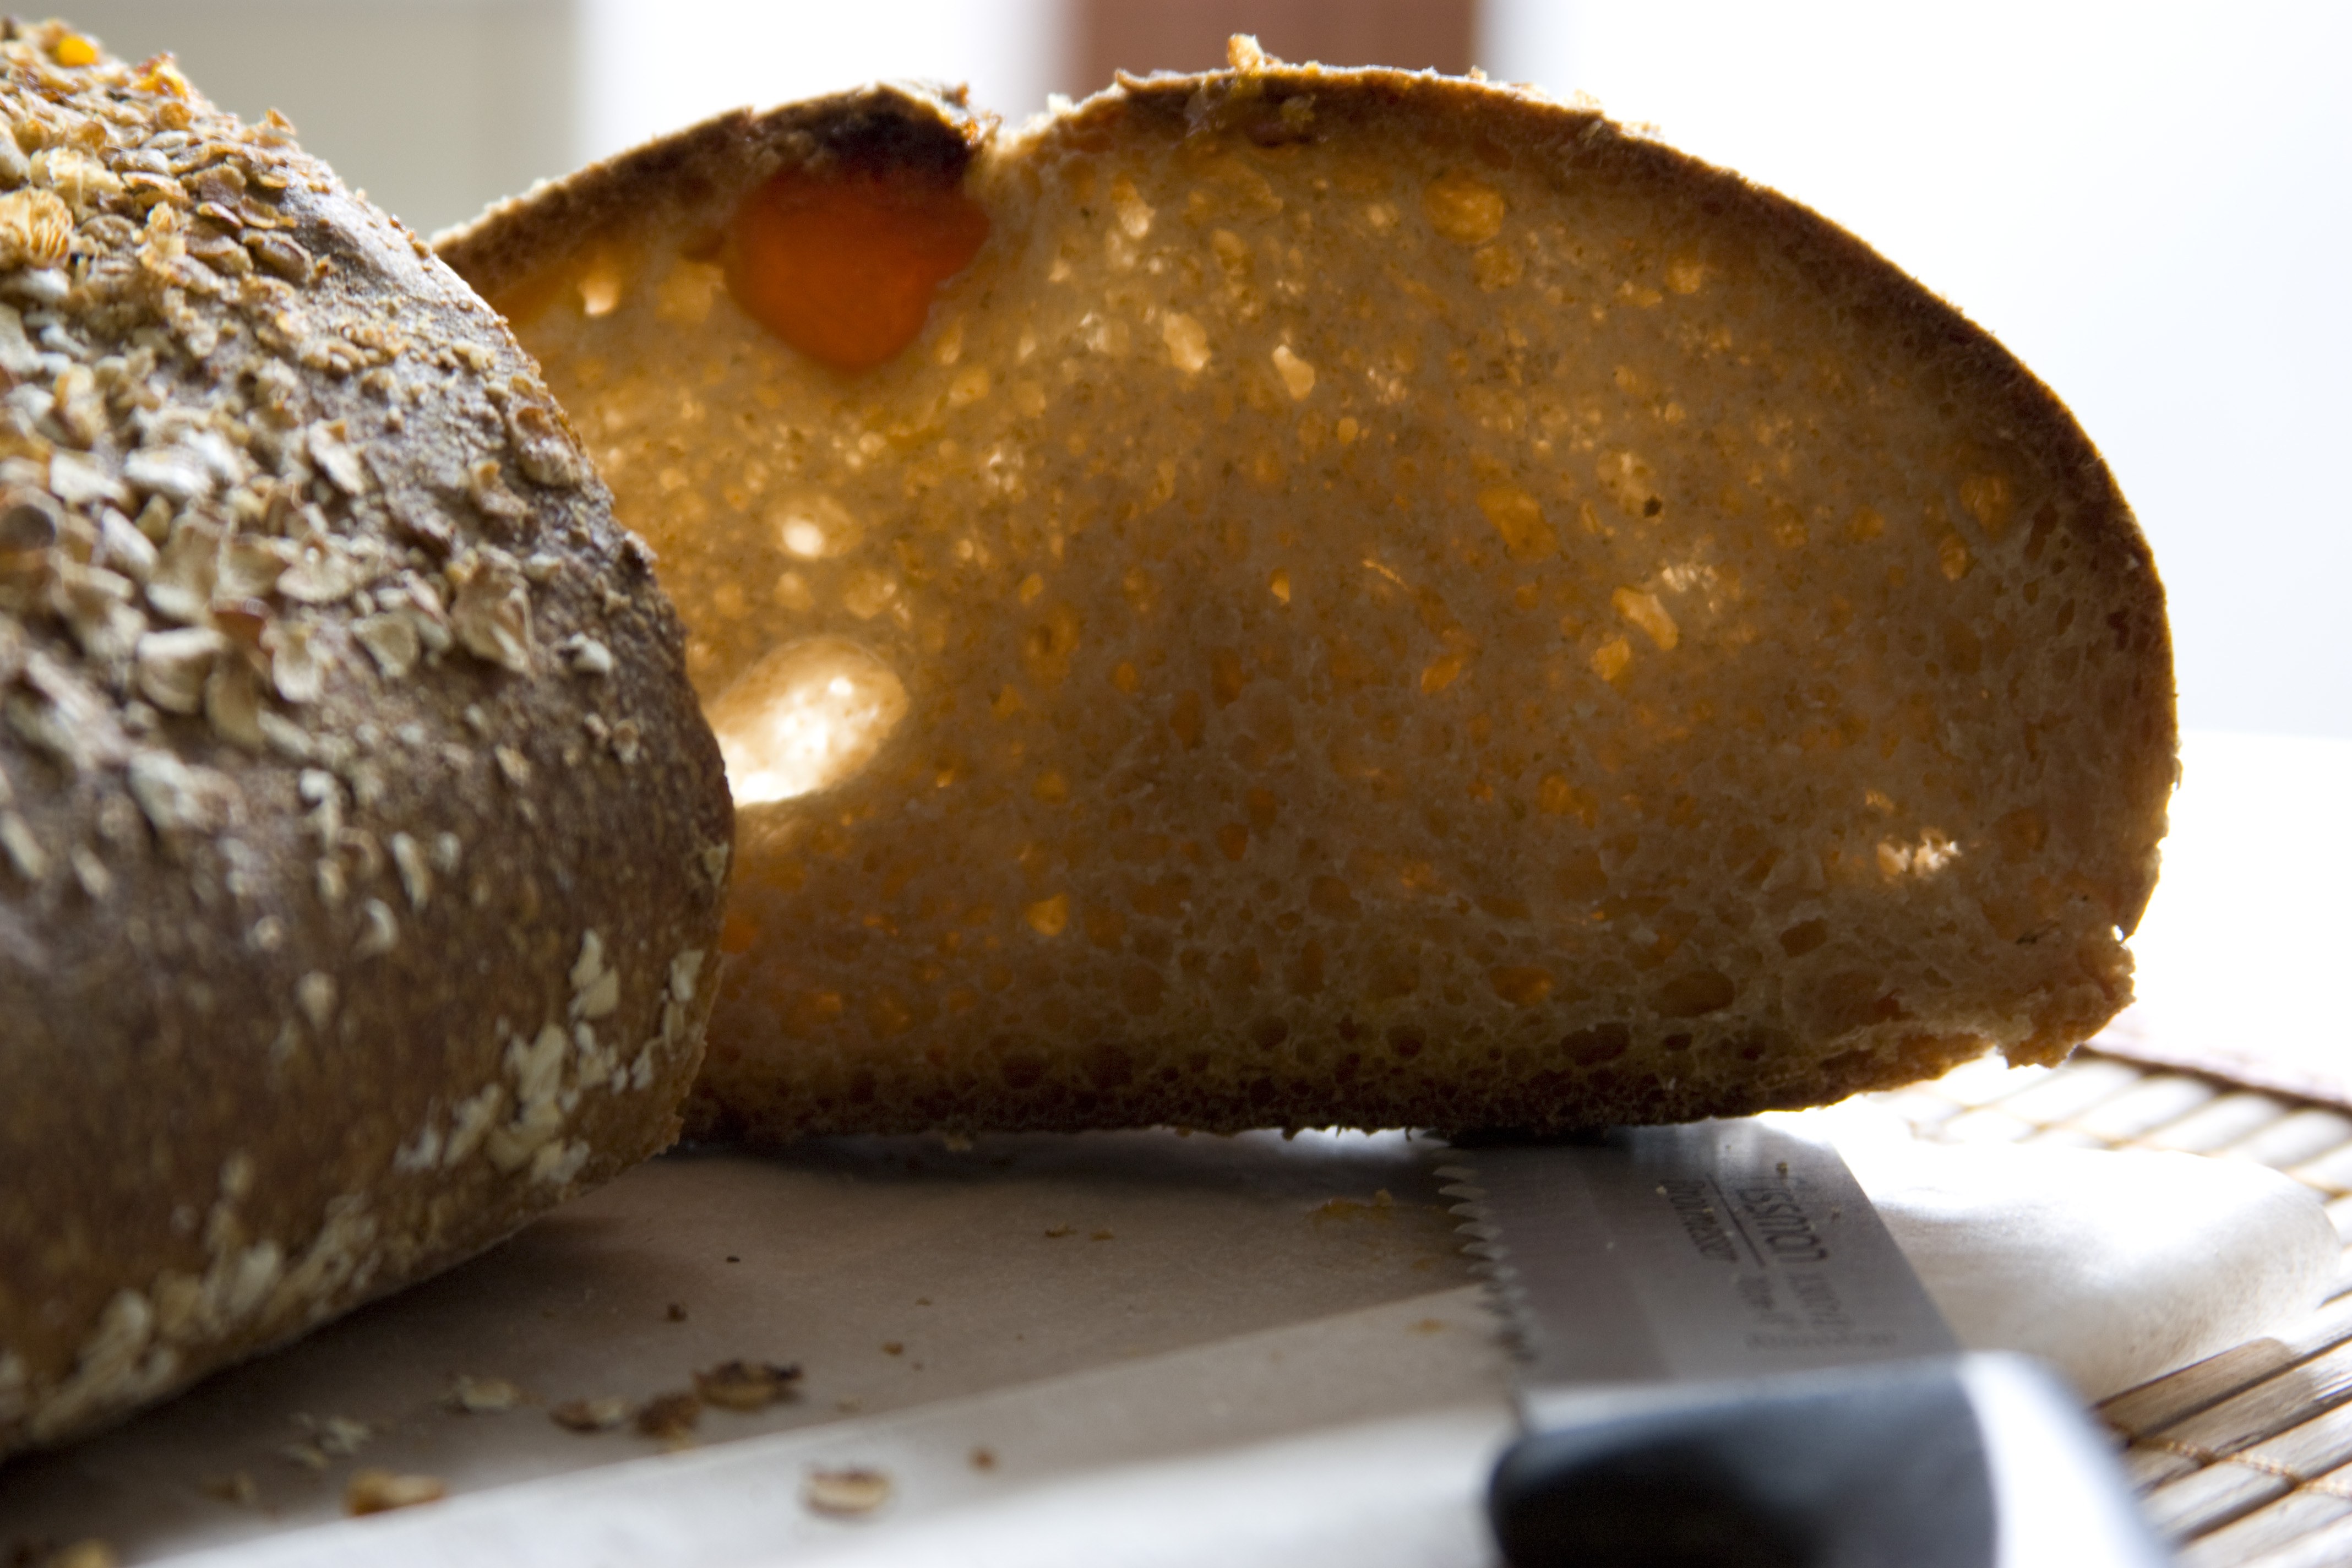 Рецепт хлеба из цельнозерновой муки на закваске